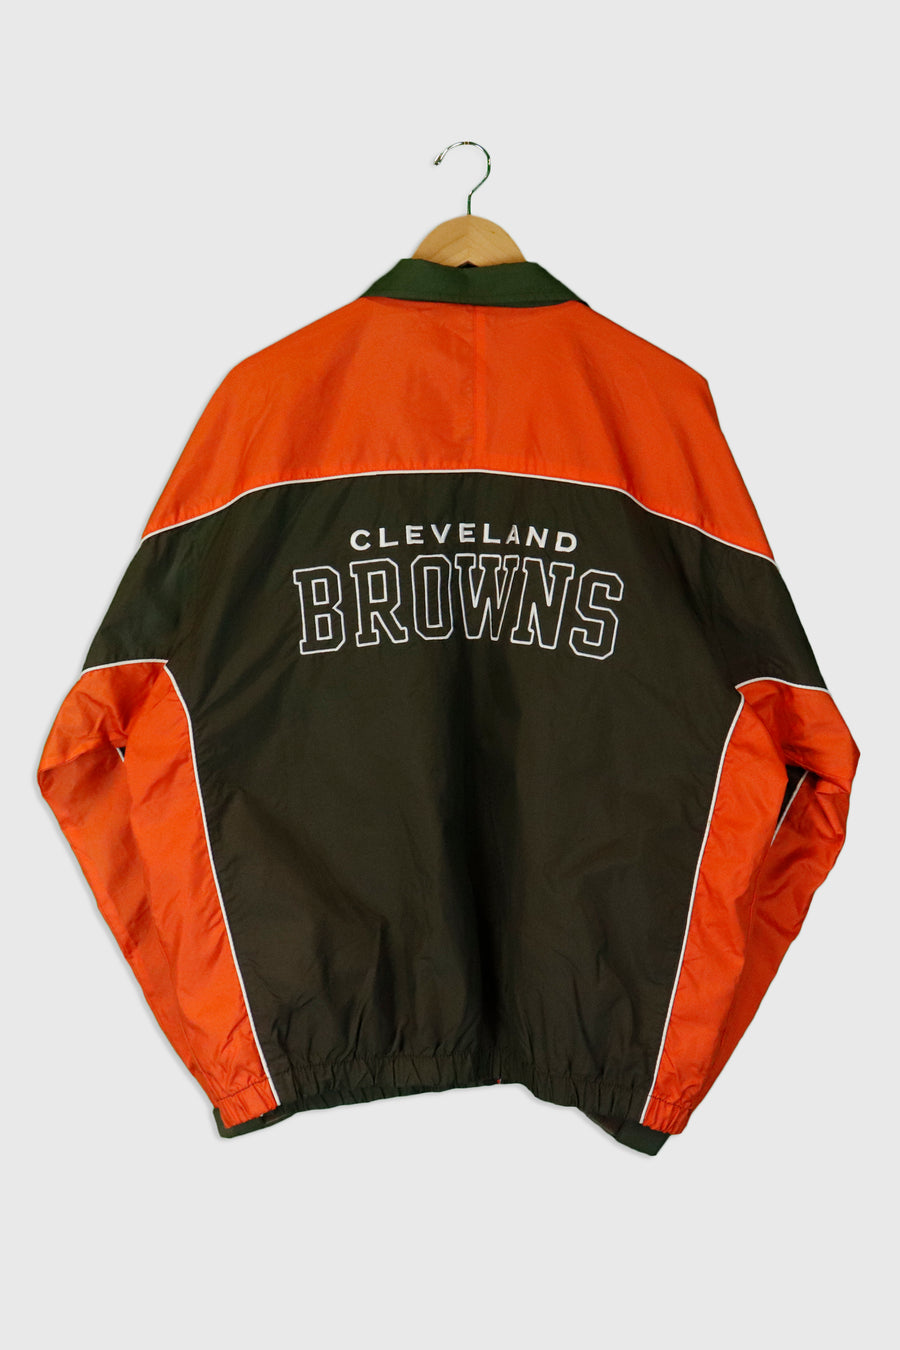 Vintage NFL Cleveland Browns Full Zip Colour Block Emroidered Helmet Jacket Sz M